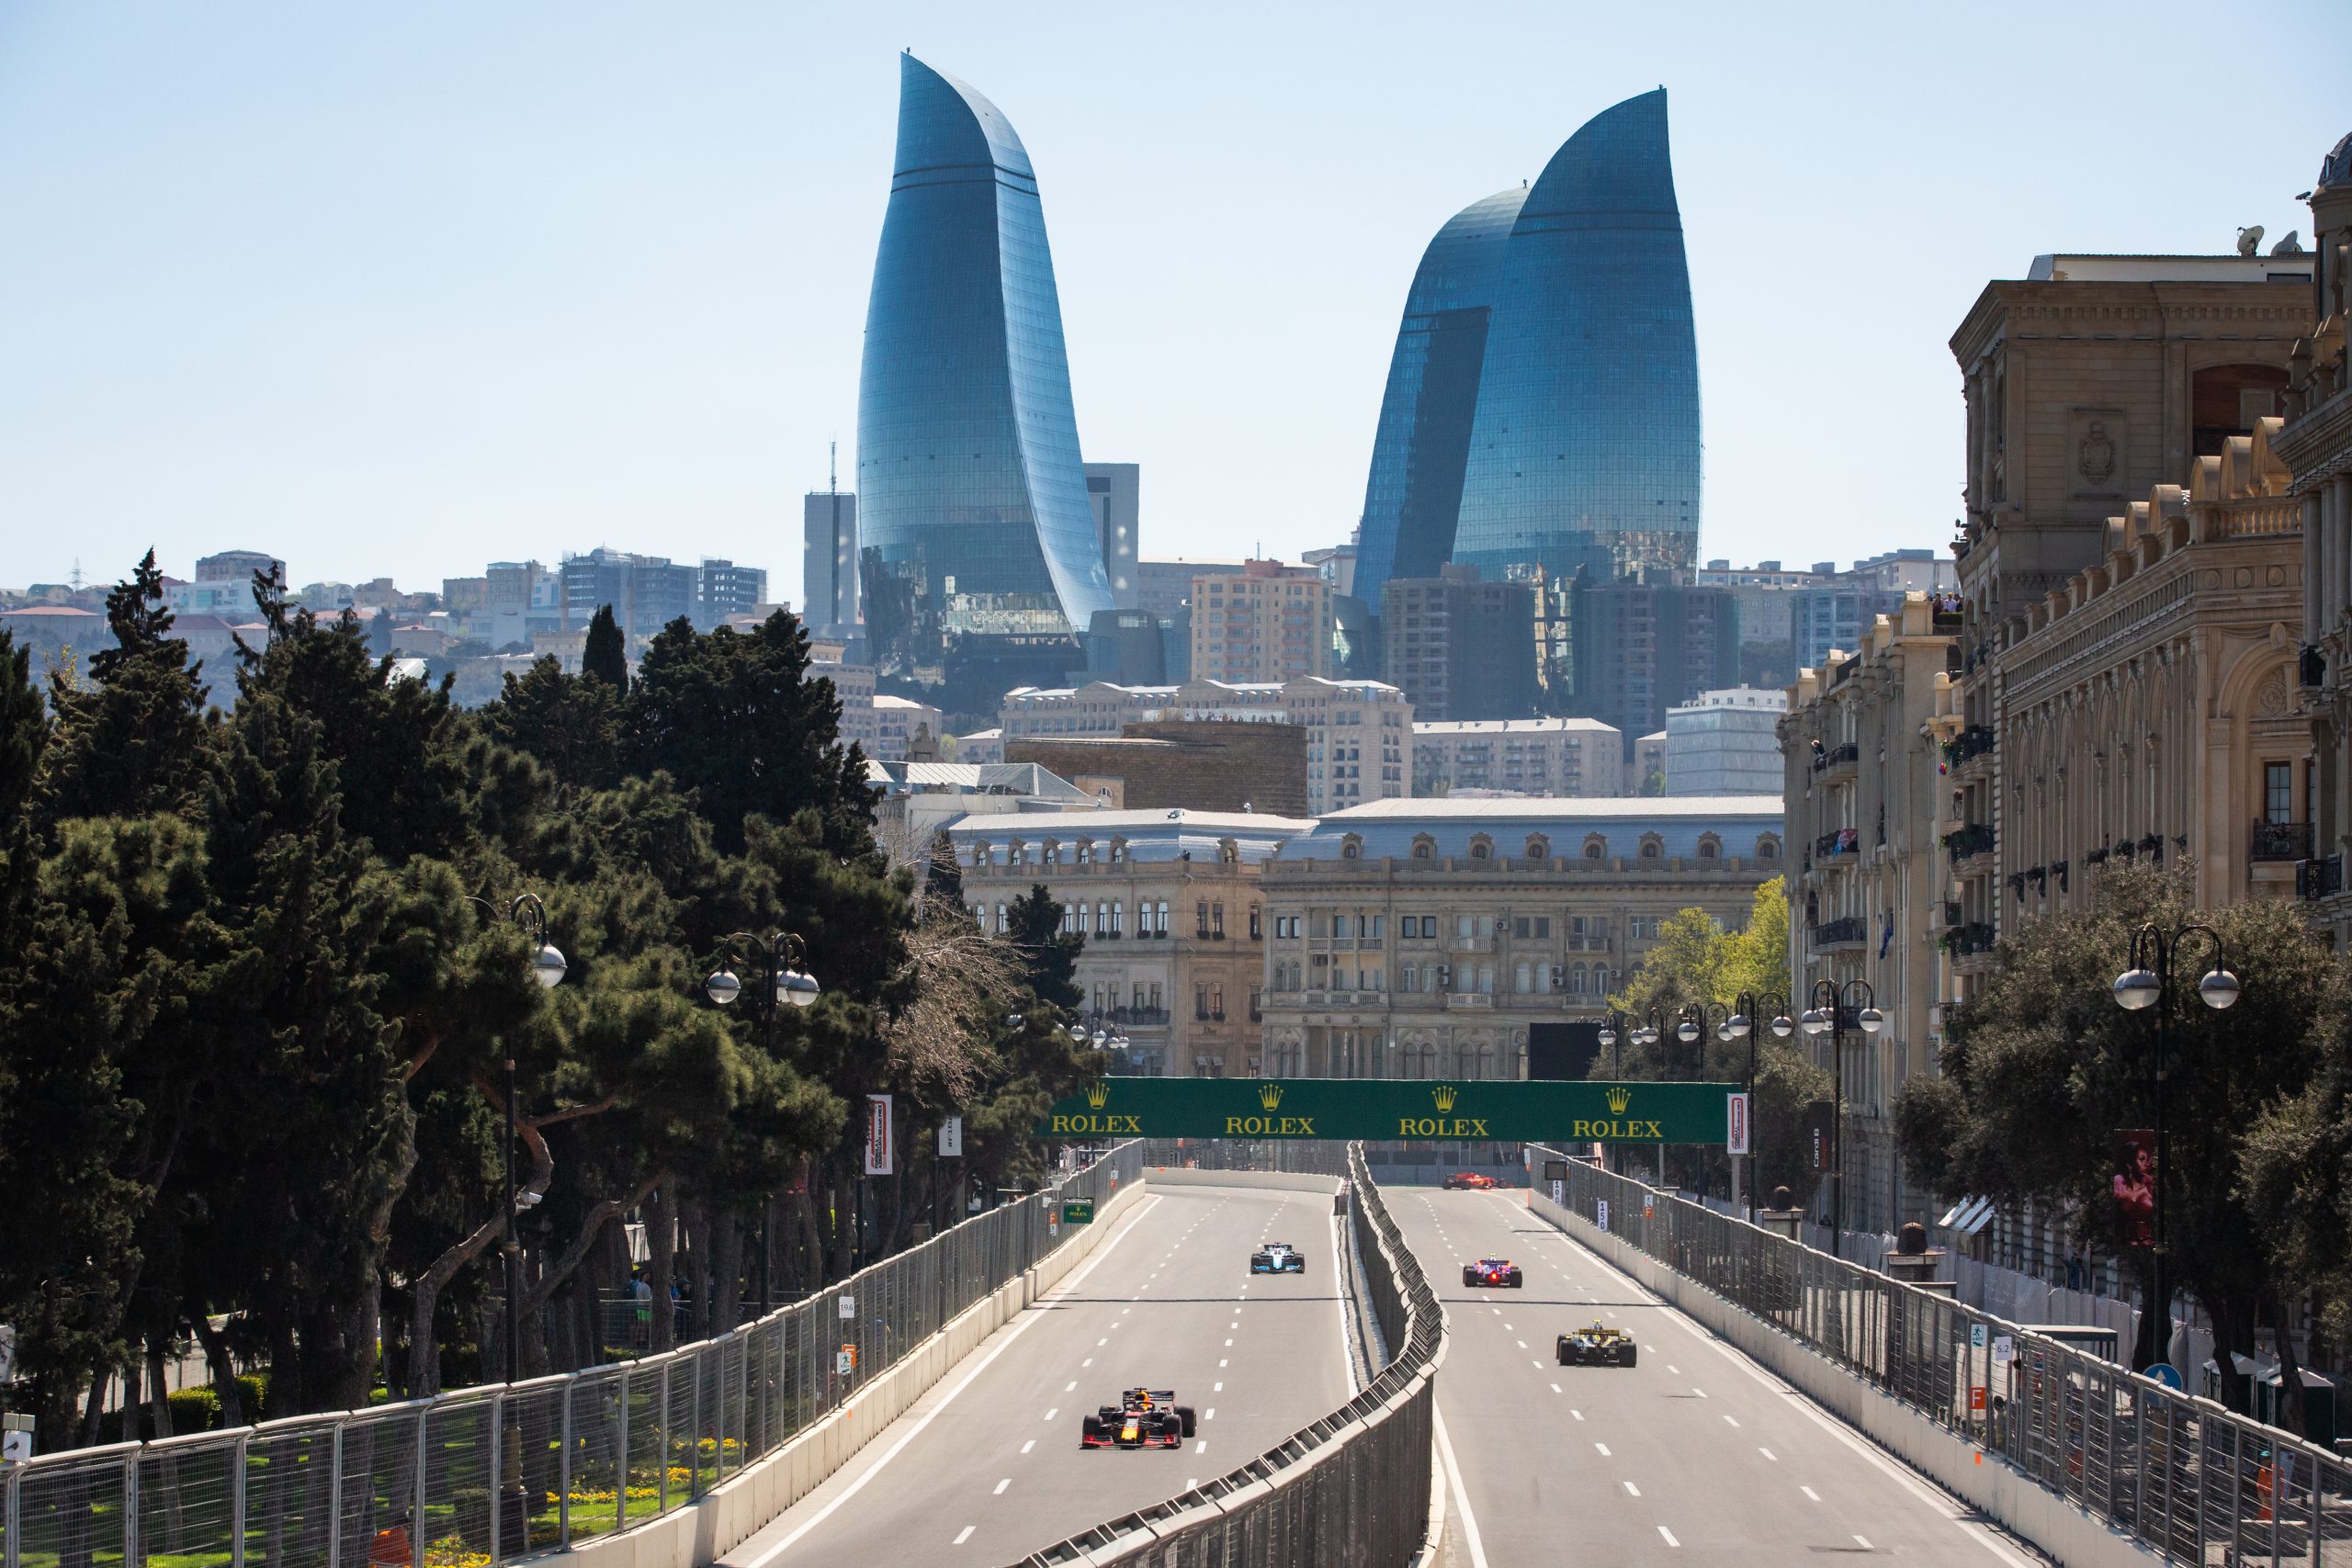 F1 – GRAND PRIX – AZERBAIJAN 2019